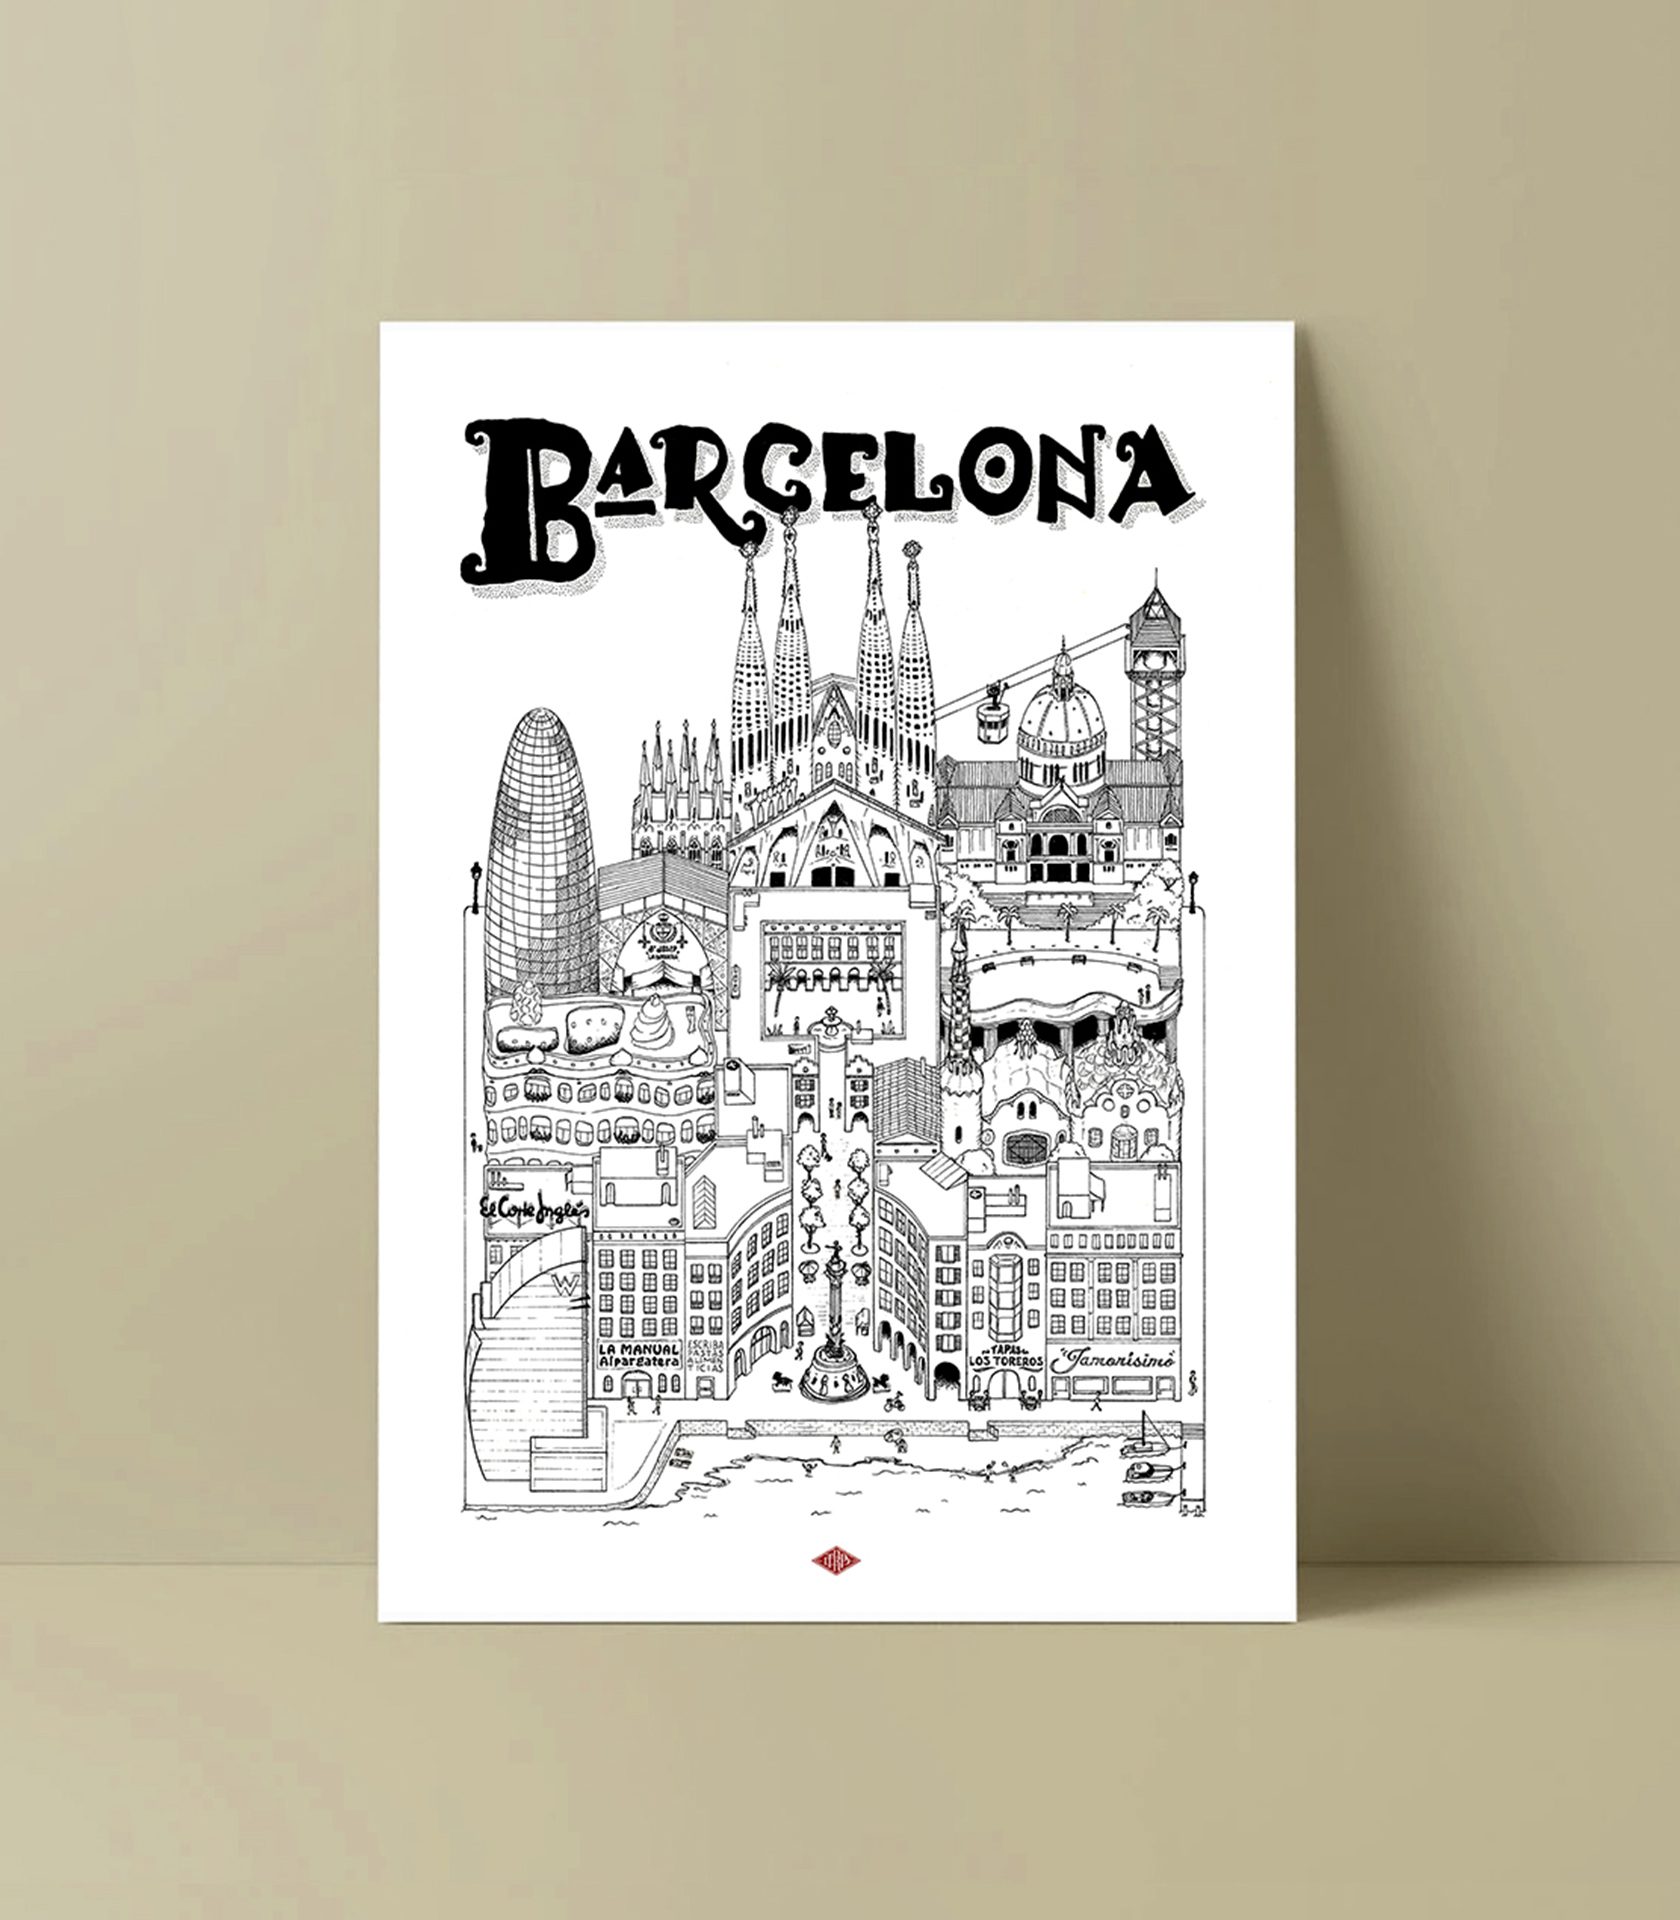 affiche de barcelone en noir et blanc